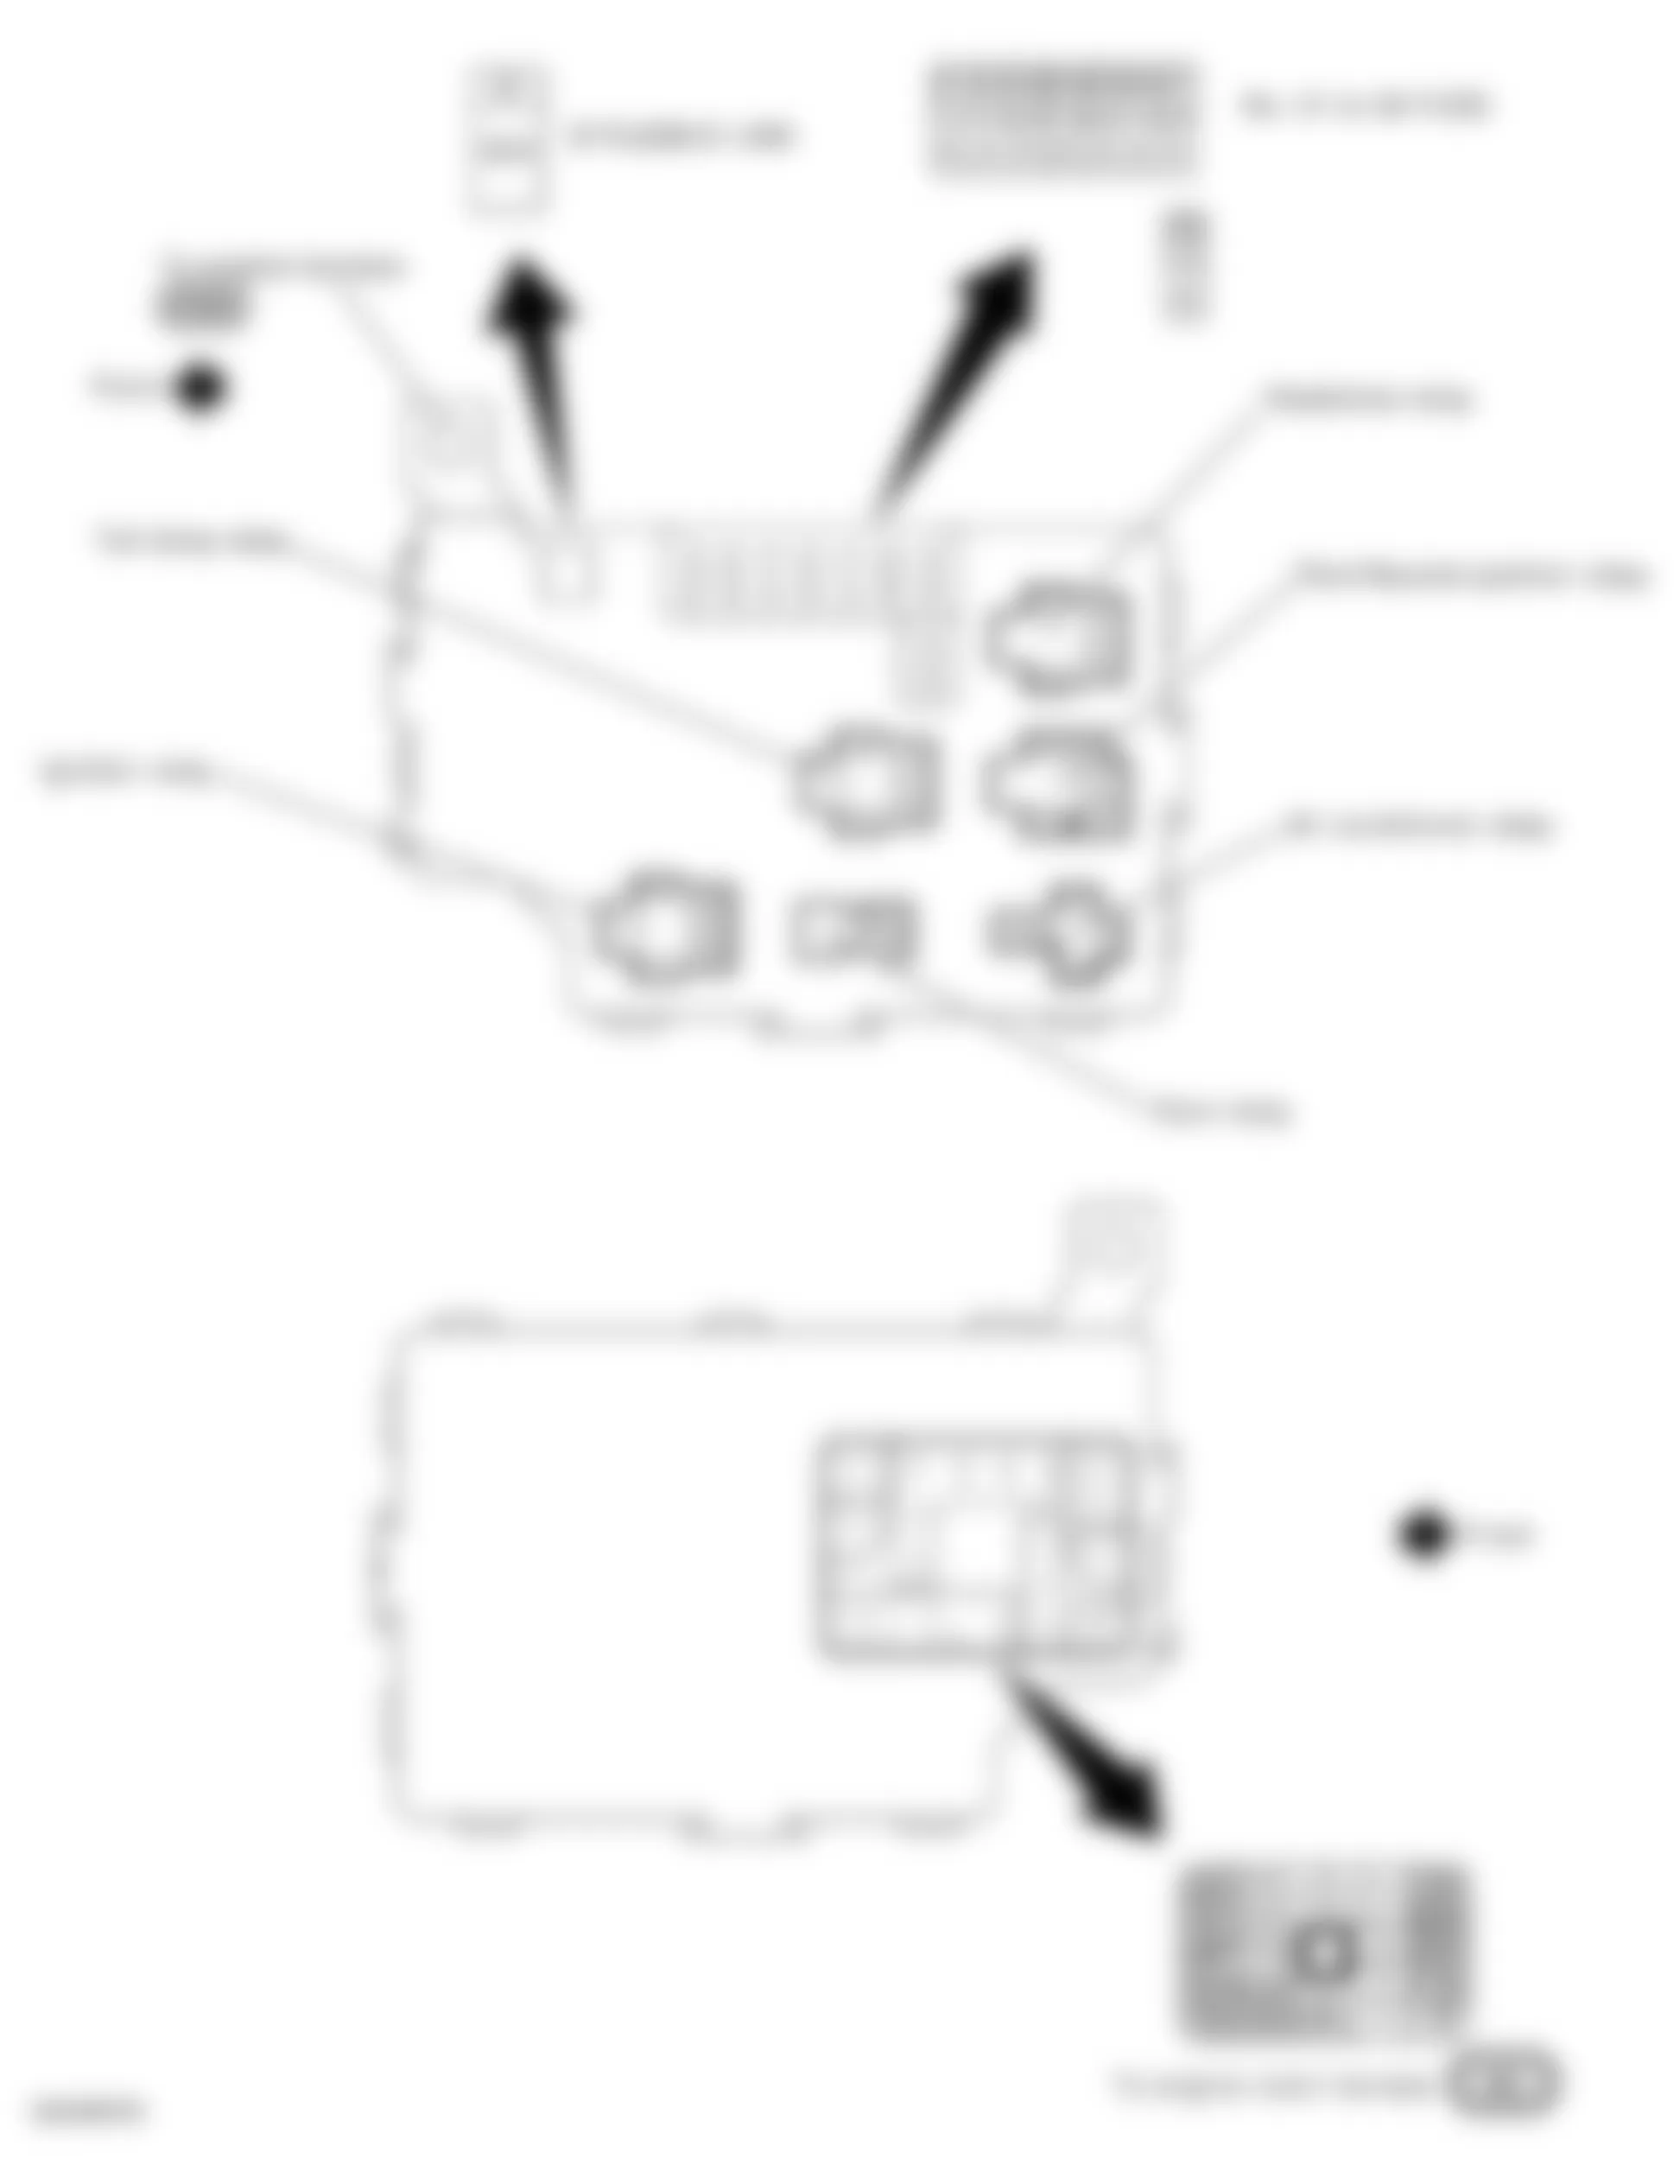 Infiniti Q45 Sport 2006 - Component Locations -  Fuse, Fusible Link & Relay Block (J/B)